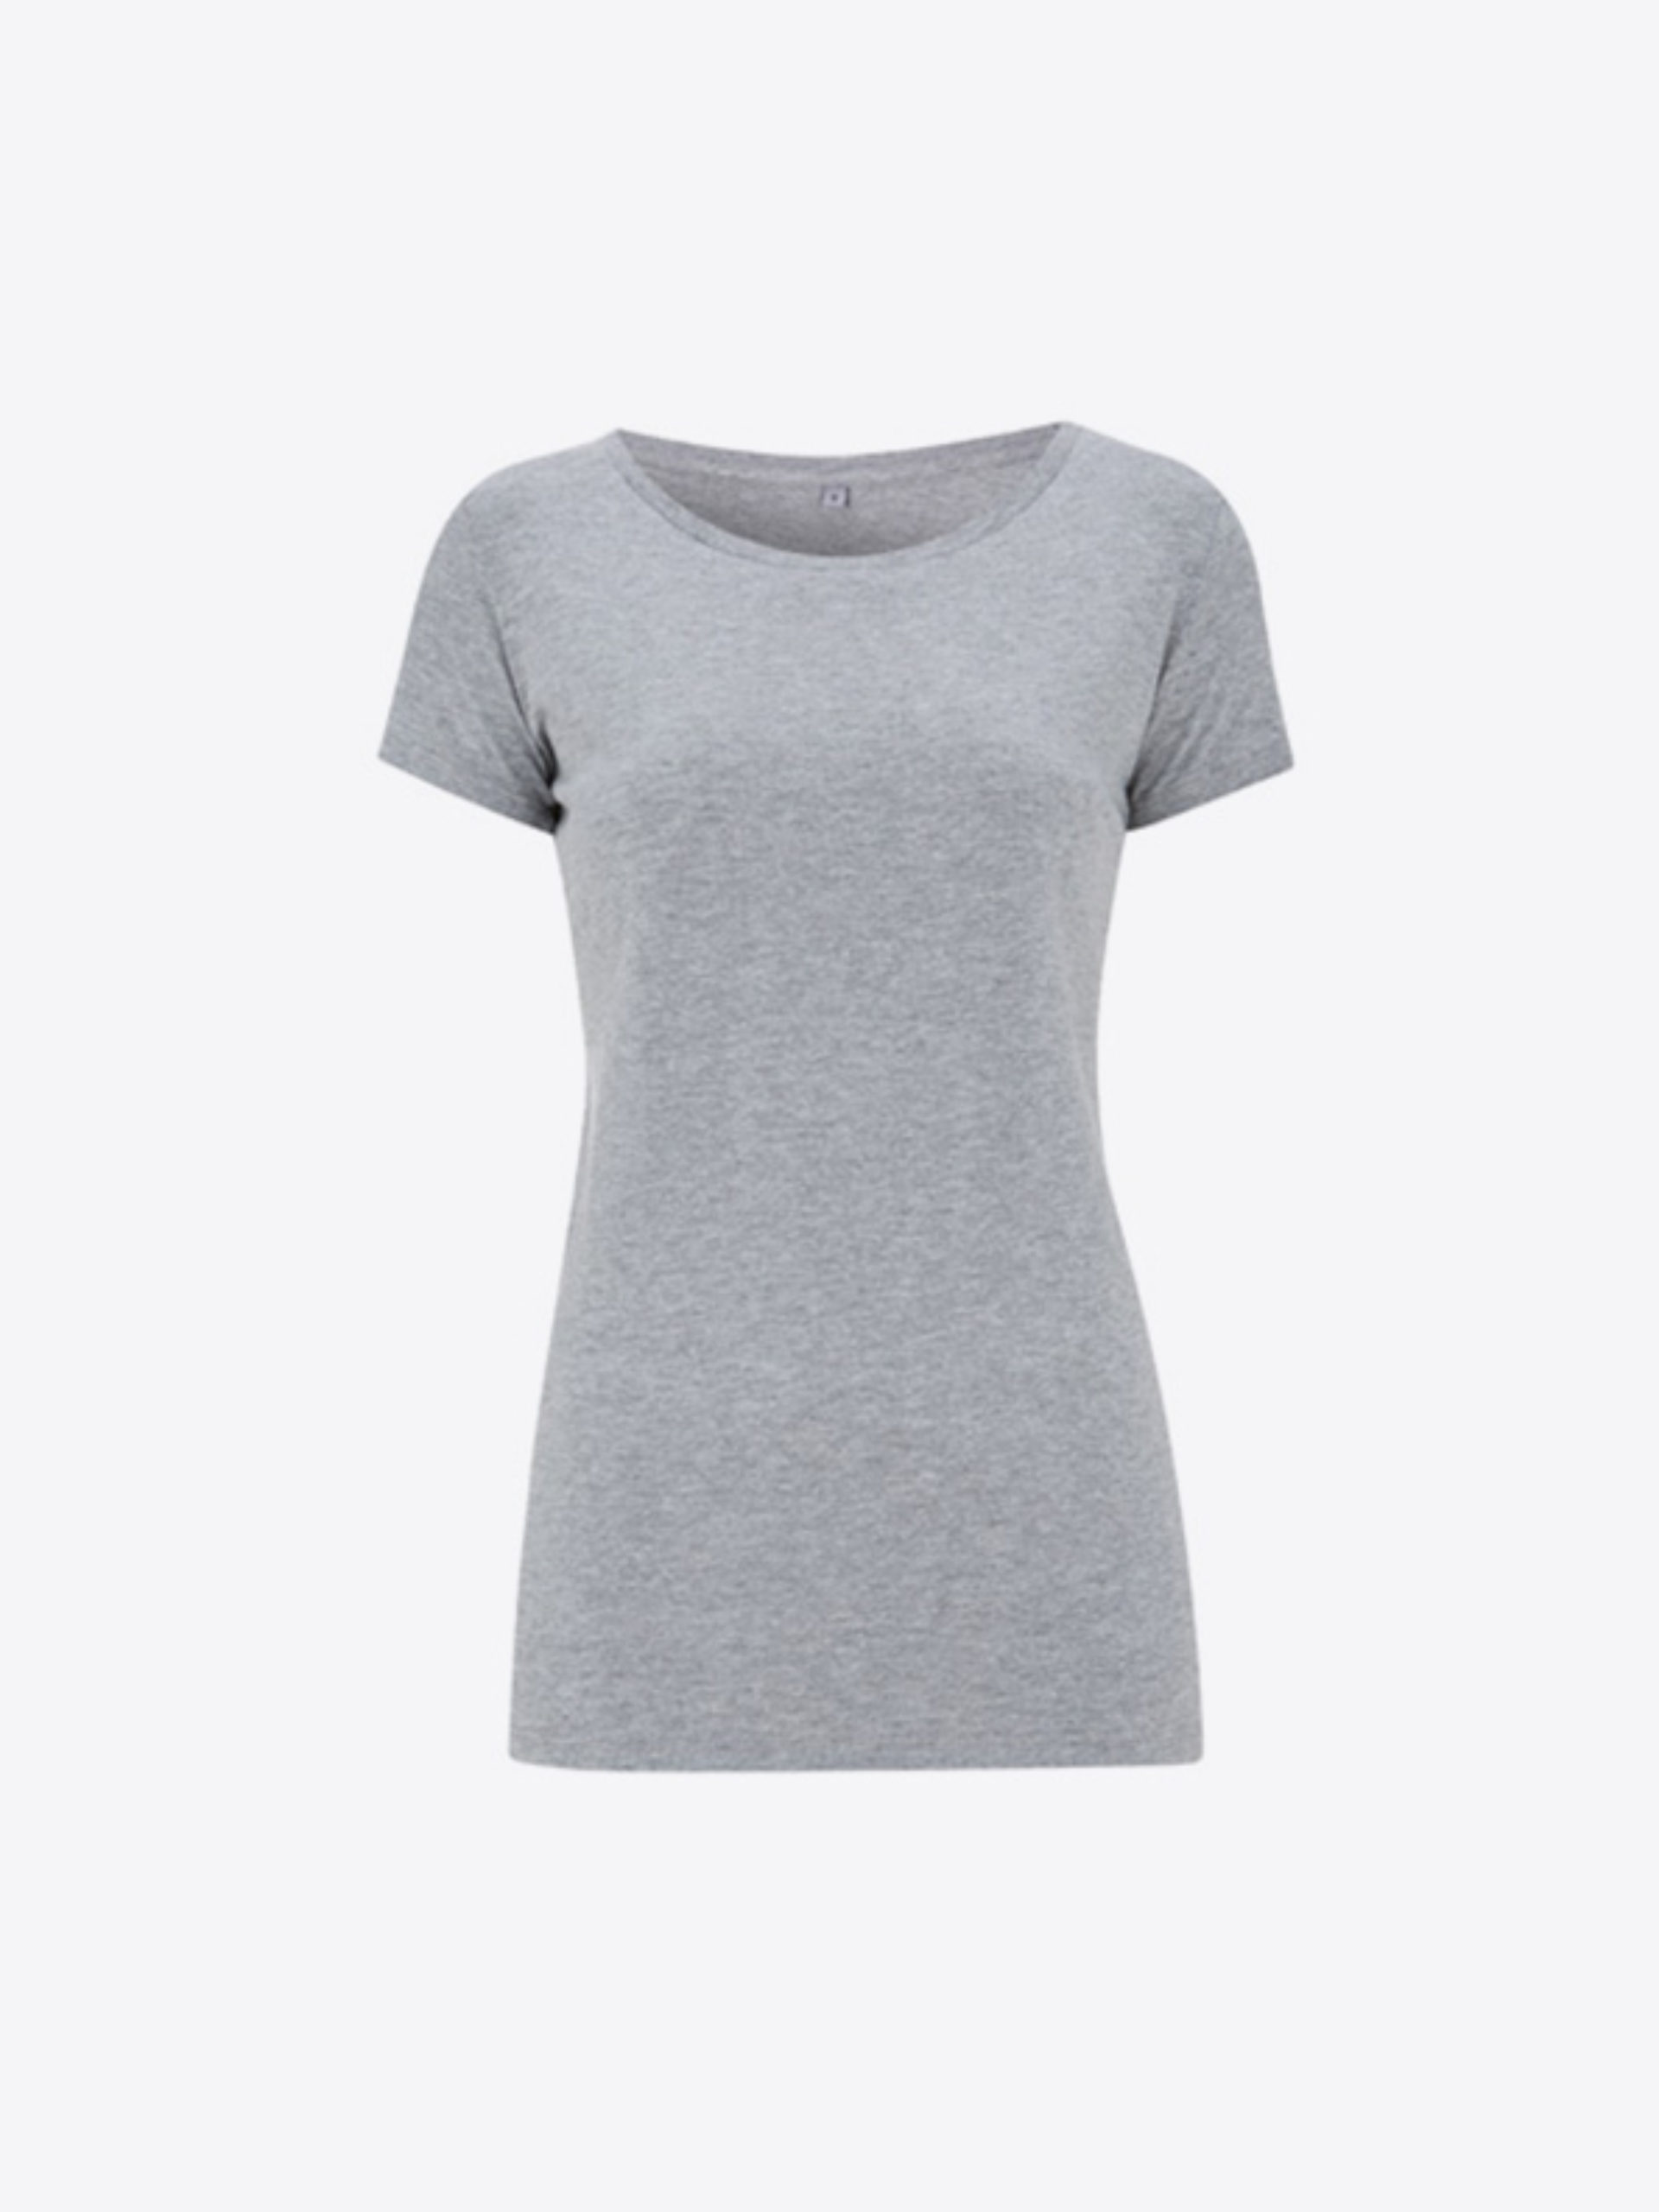 Frauen T Shirt Farbig Drucken Mit Logo Continental N09 Melange Grey